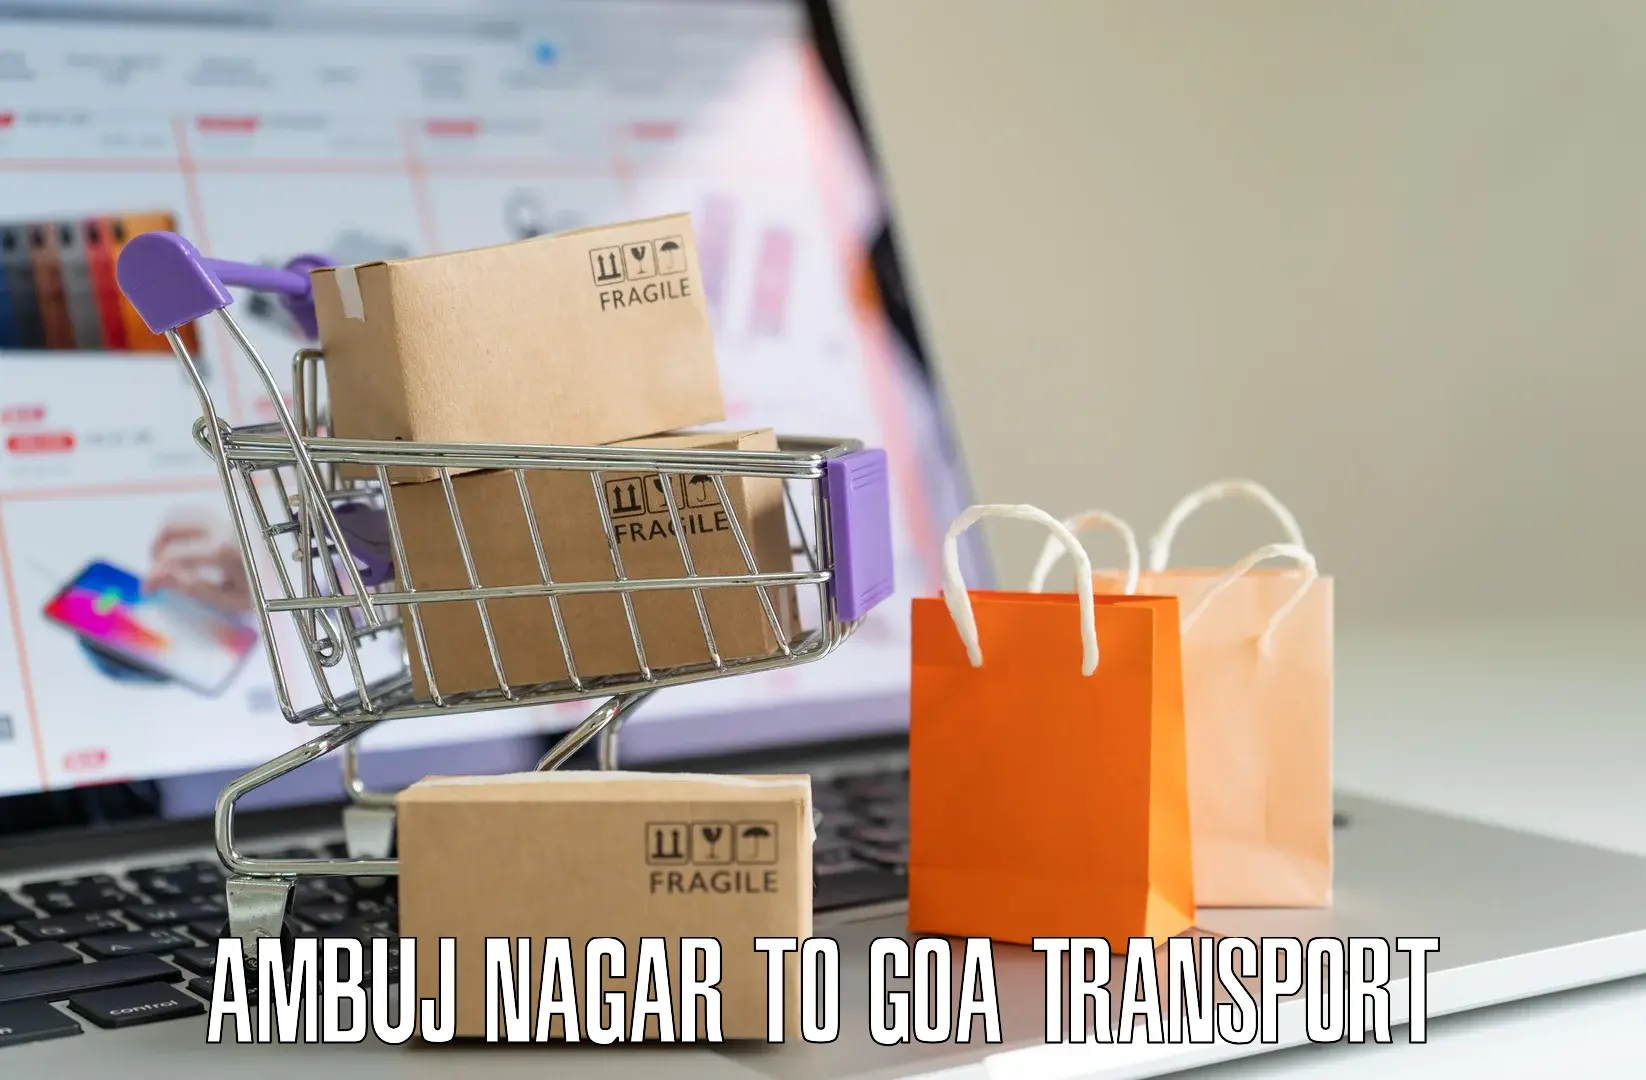 Intercity transport Ambuj Nagar to Goa